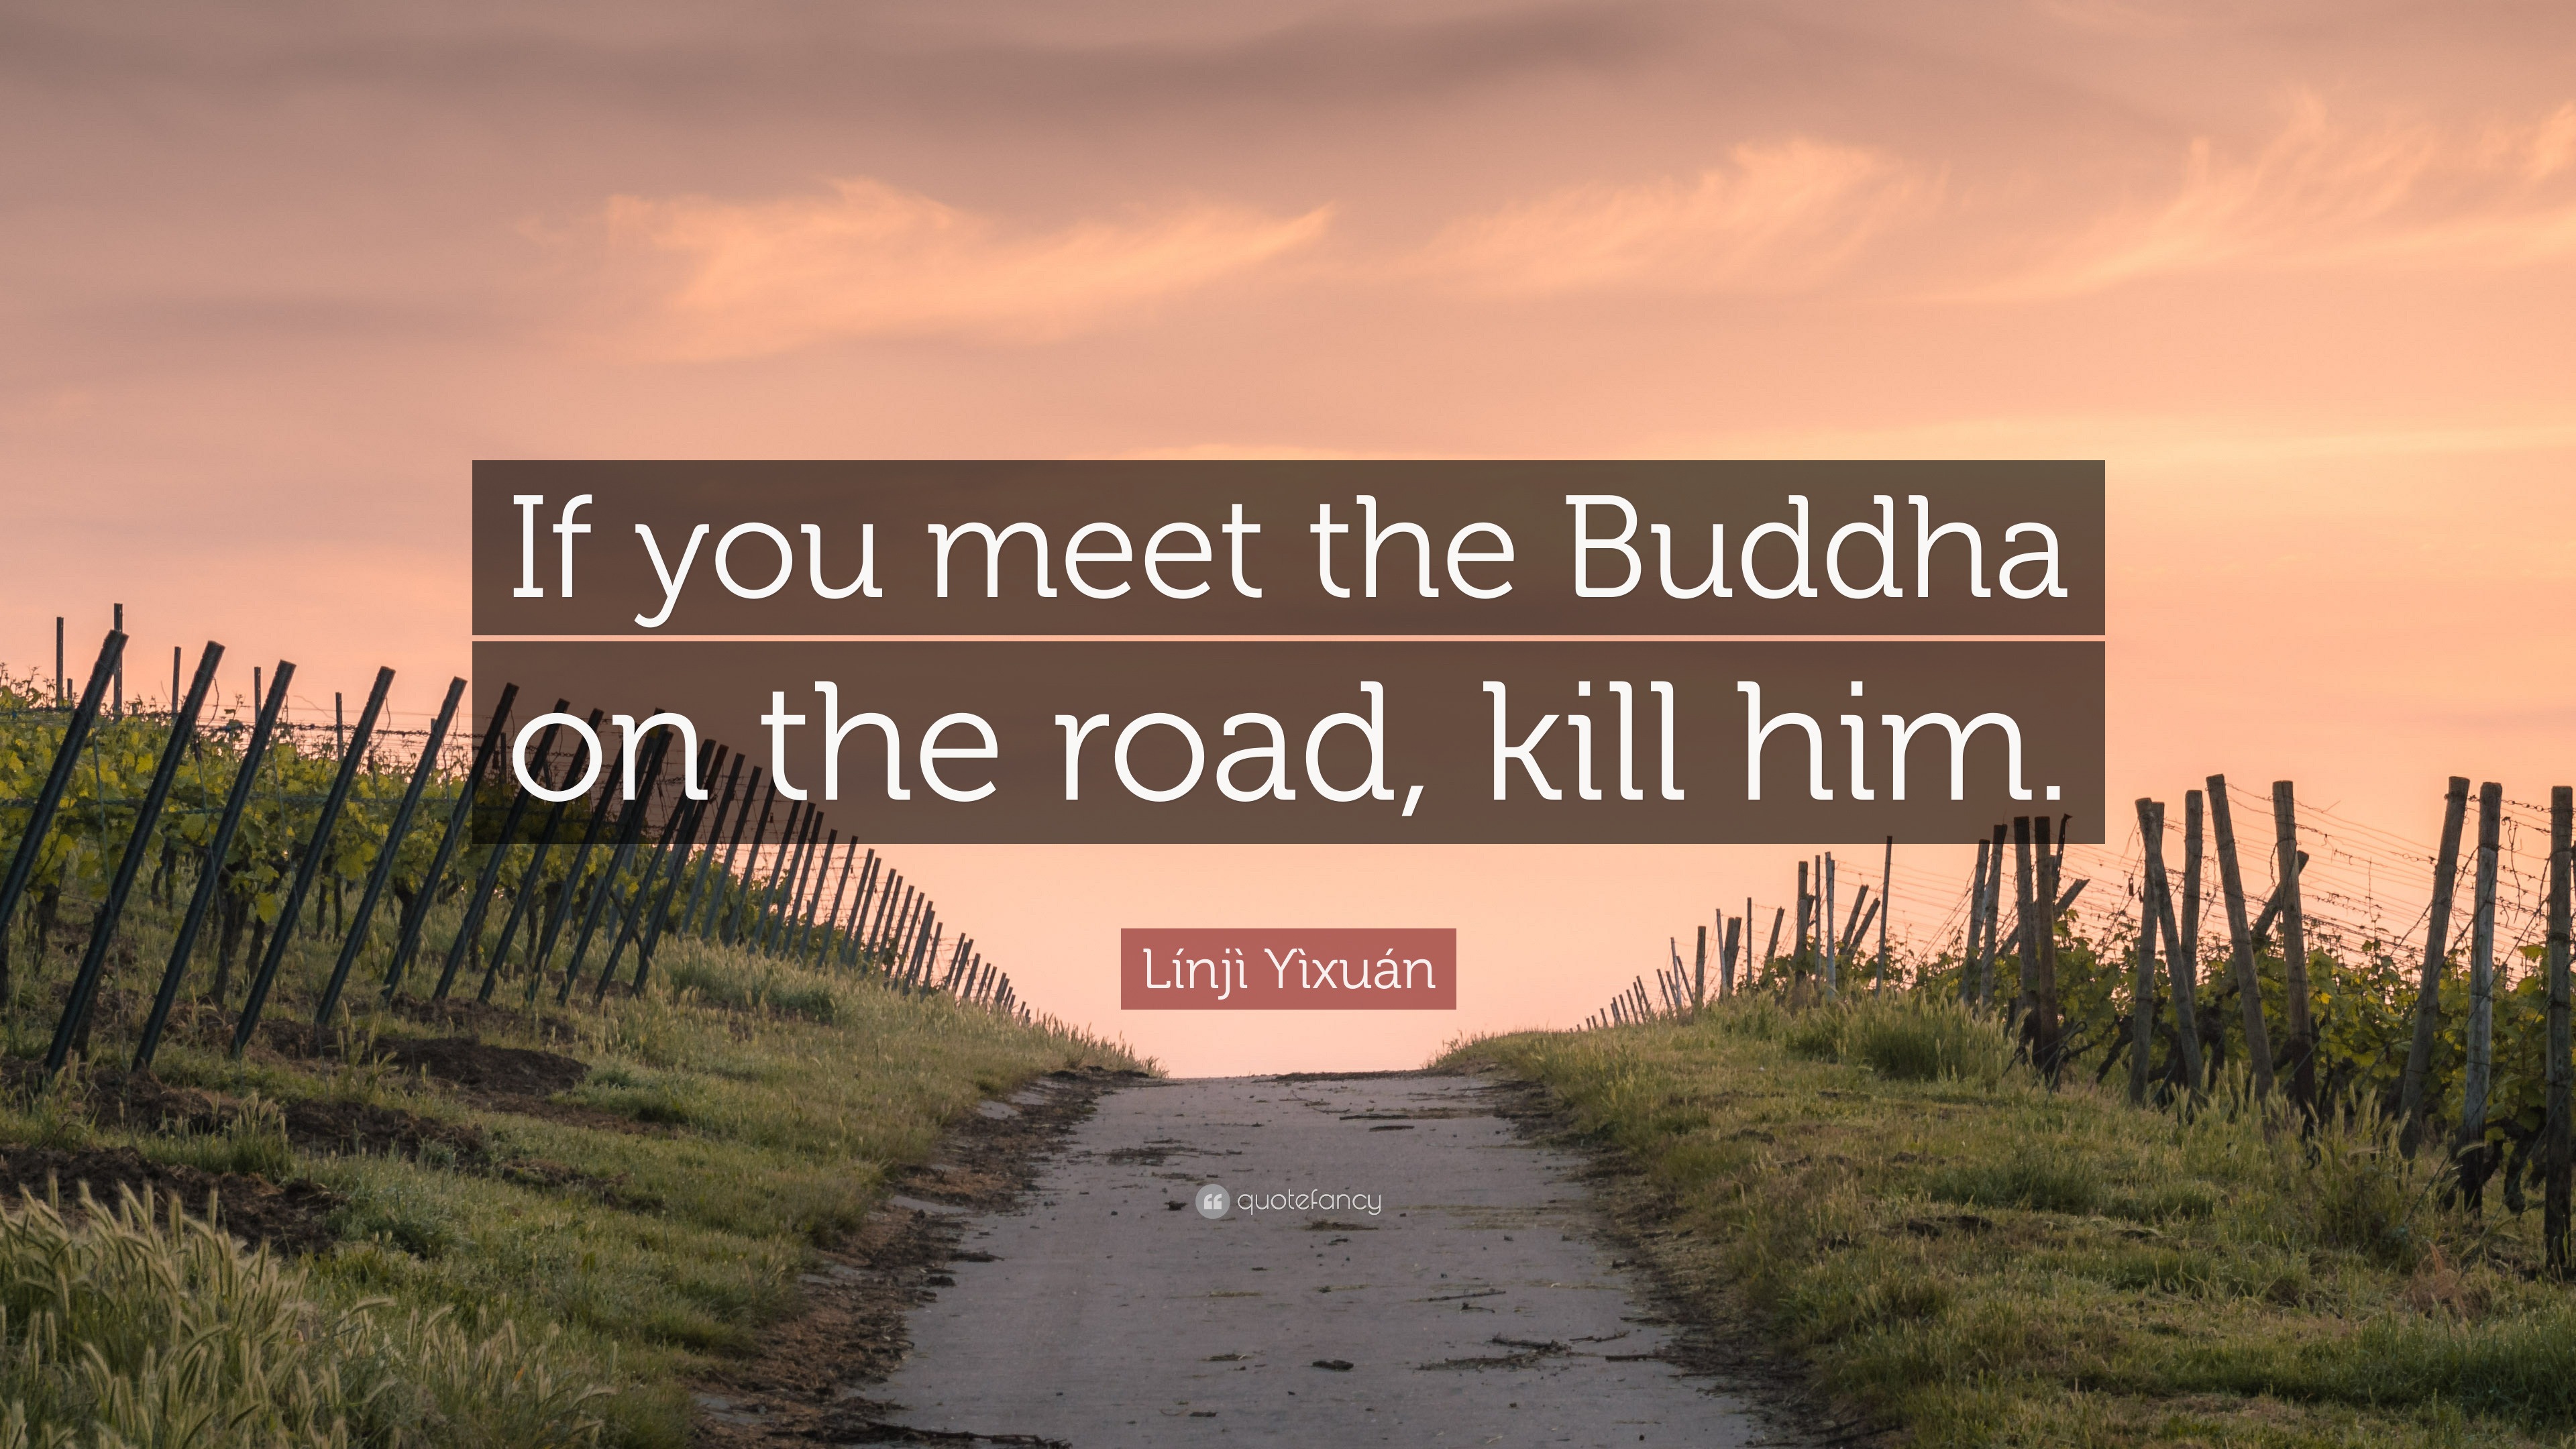 Proberen Hick zo Línjì Yìxuán Quote: “If you meet the Buddha on the road, kill him.”